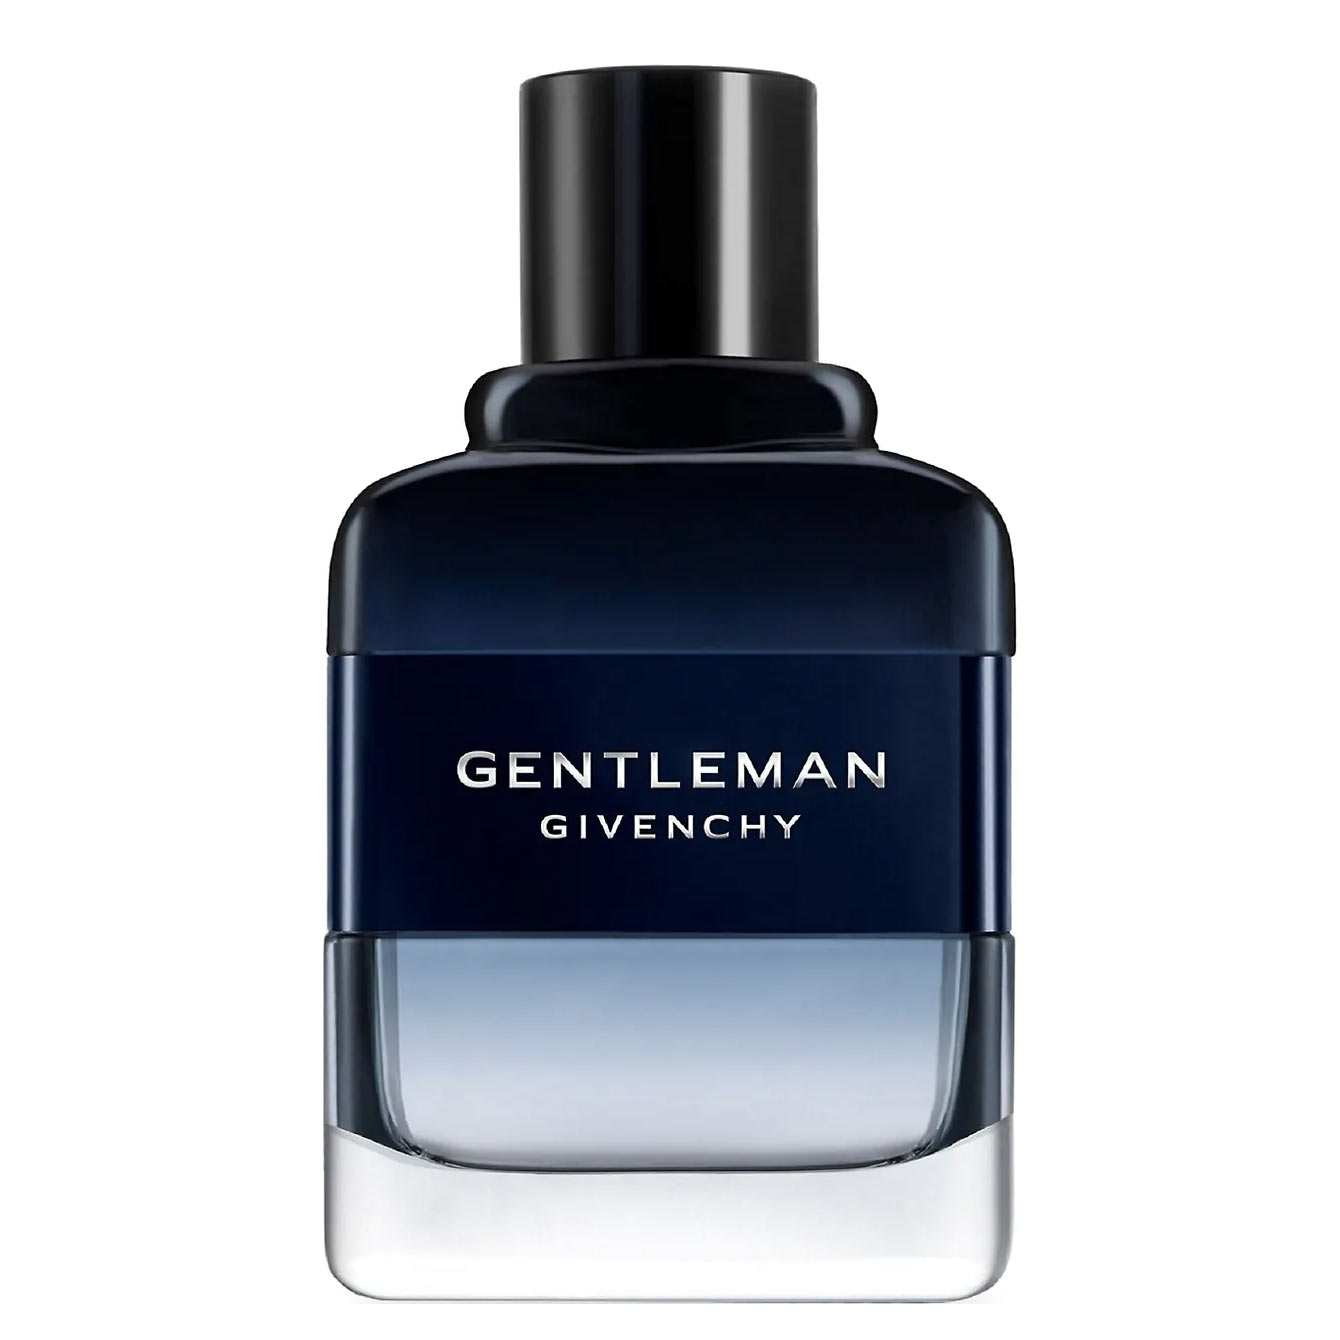 Gentleman Eau de Toilette Intense Givenchy Image